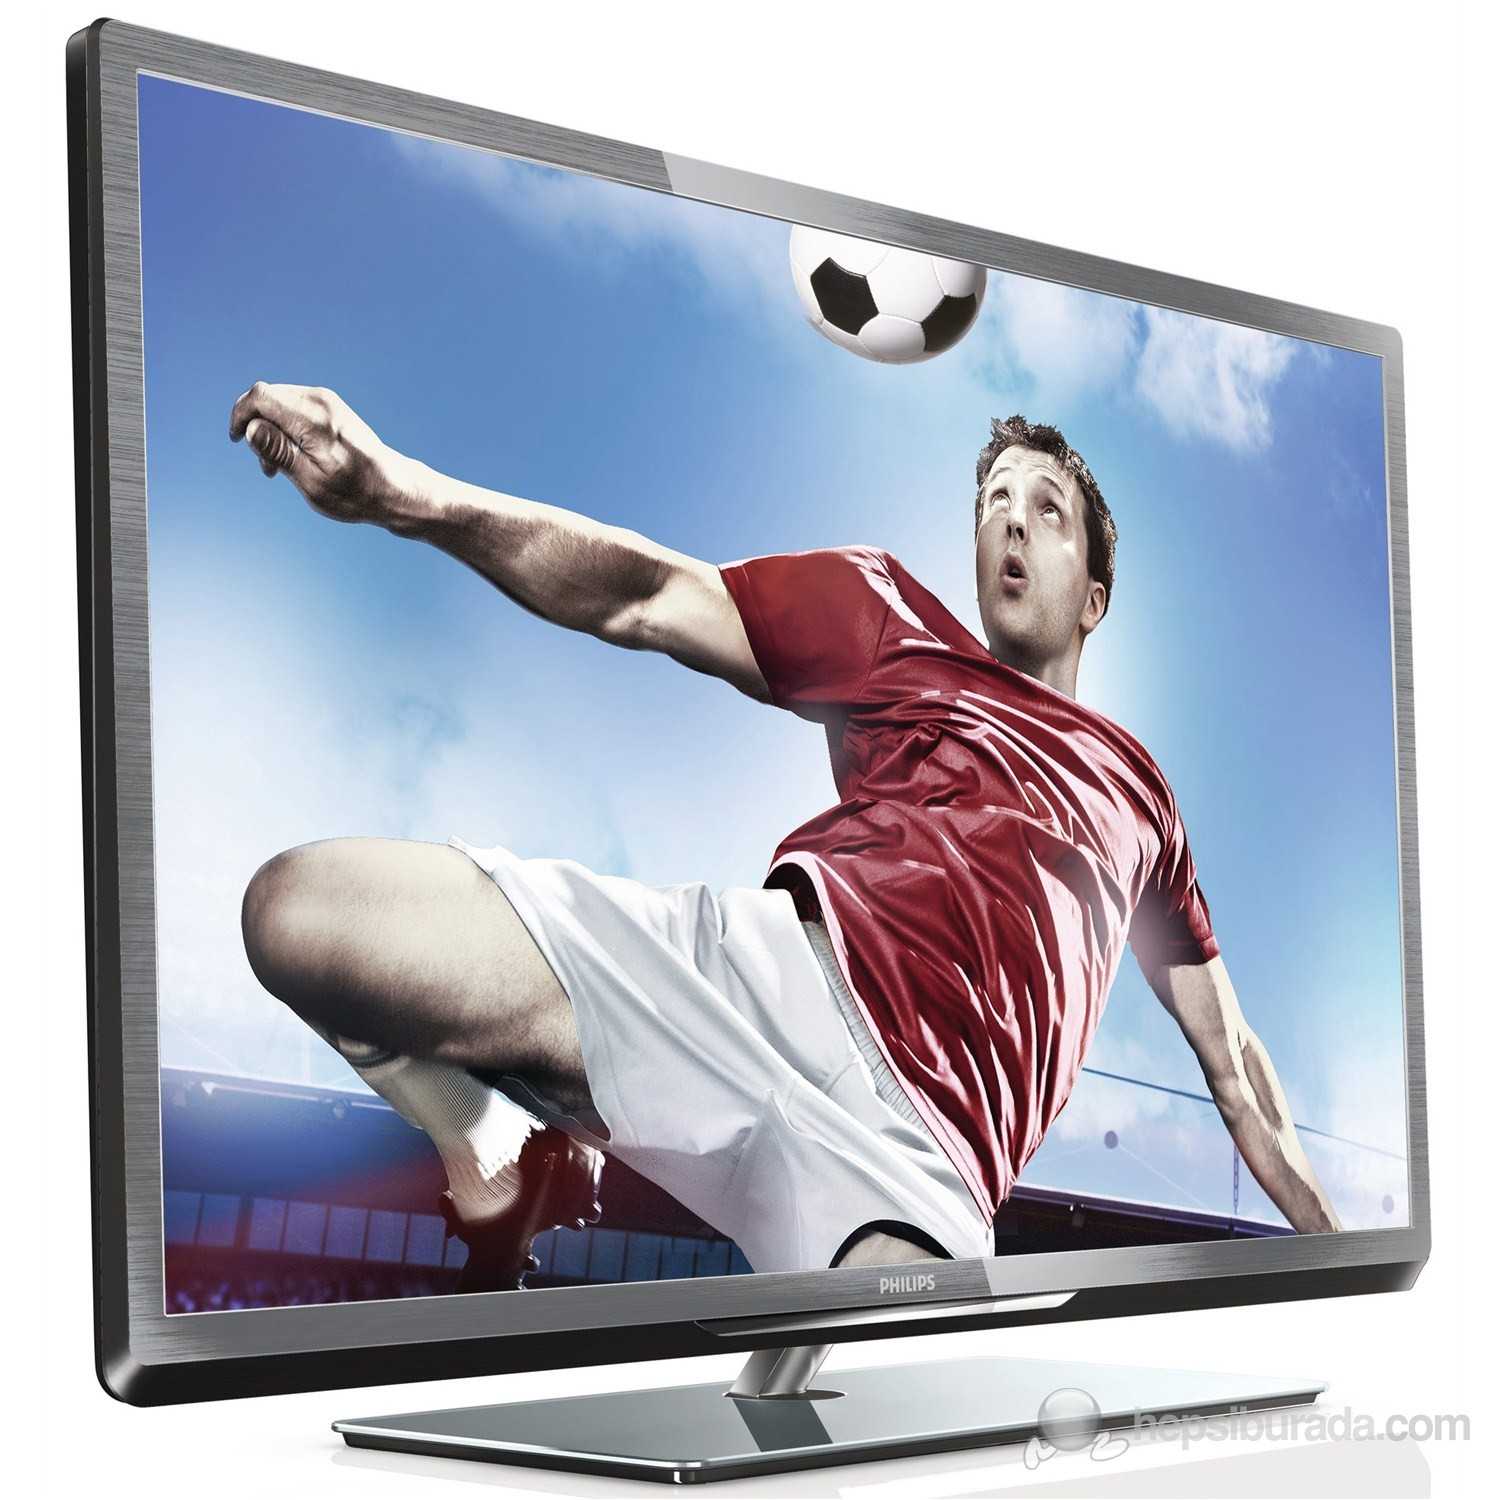 Philips 55pfl7108t - купить , скидки, цена, отзывы, обзор, характеристики - телевизоры